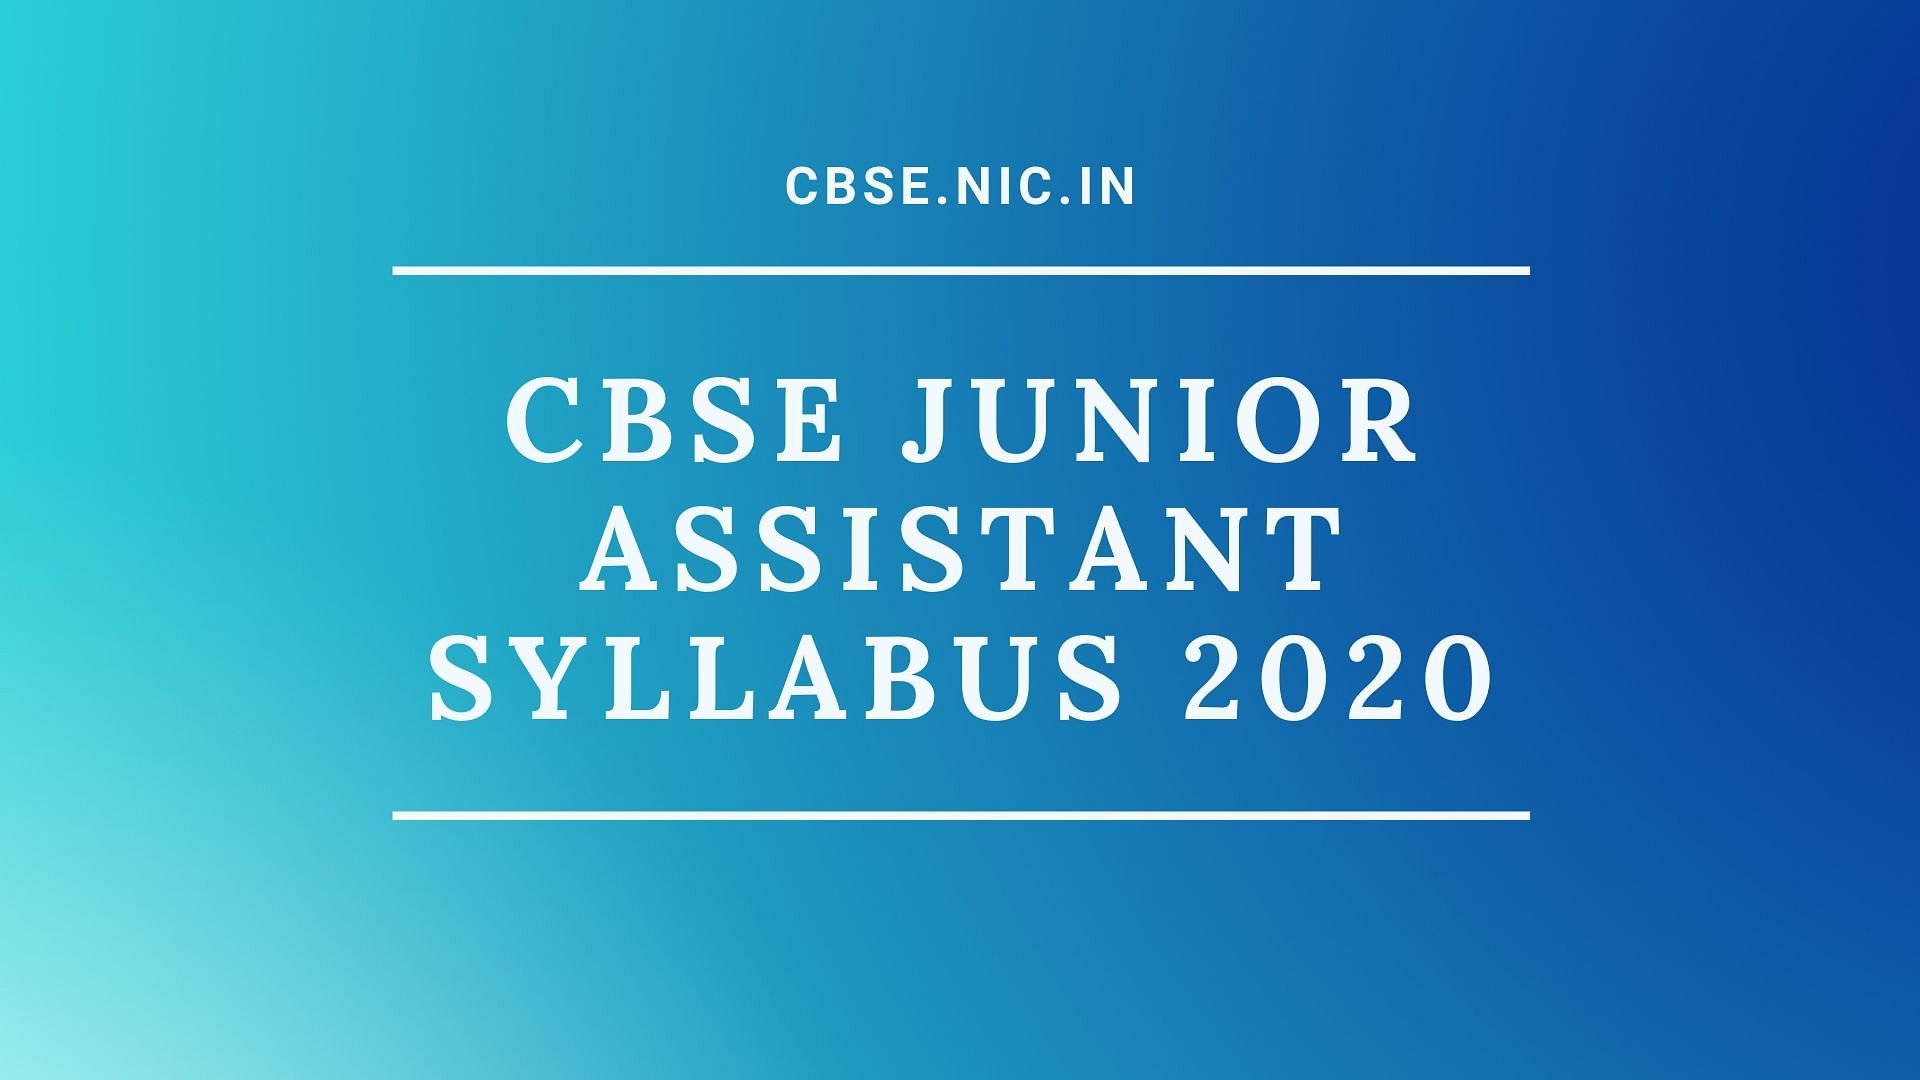 CBSE Junior Assistant Syllabus 2020.